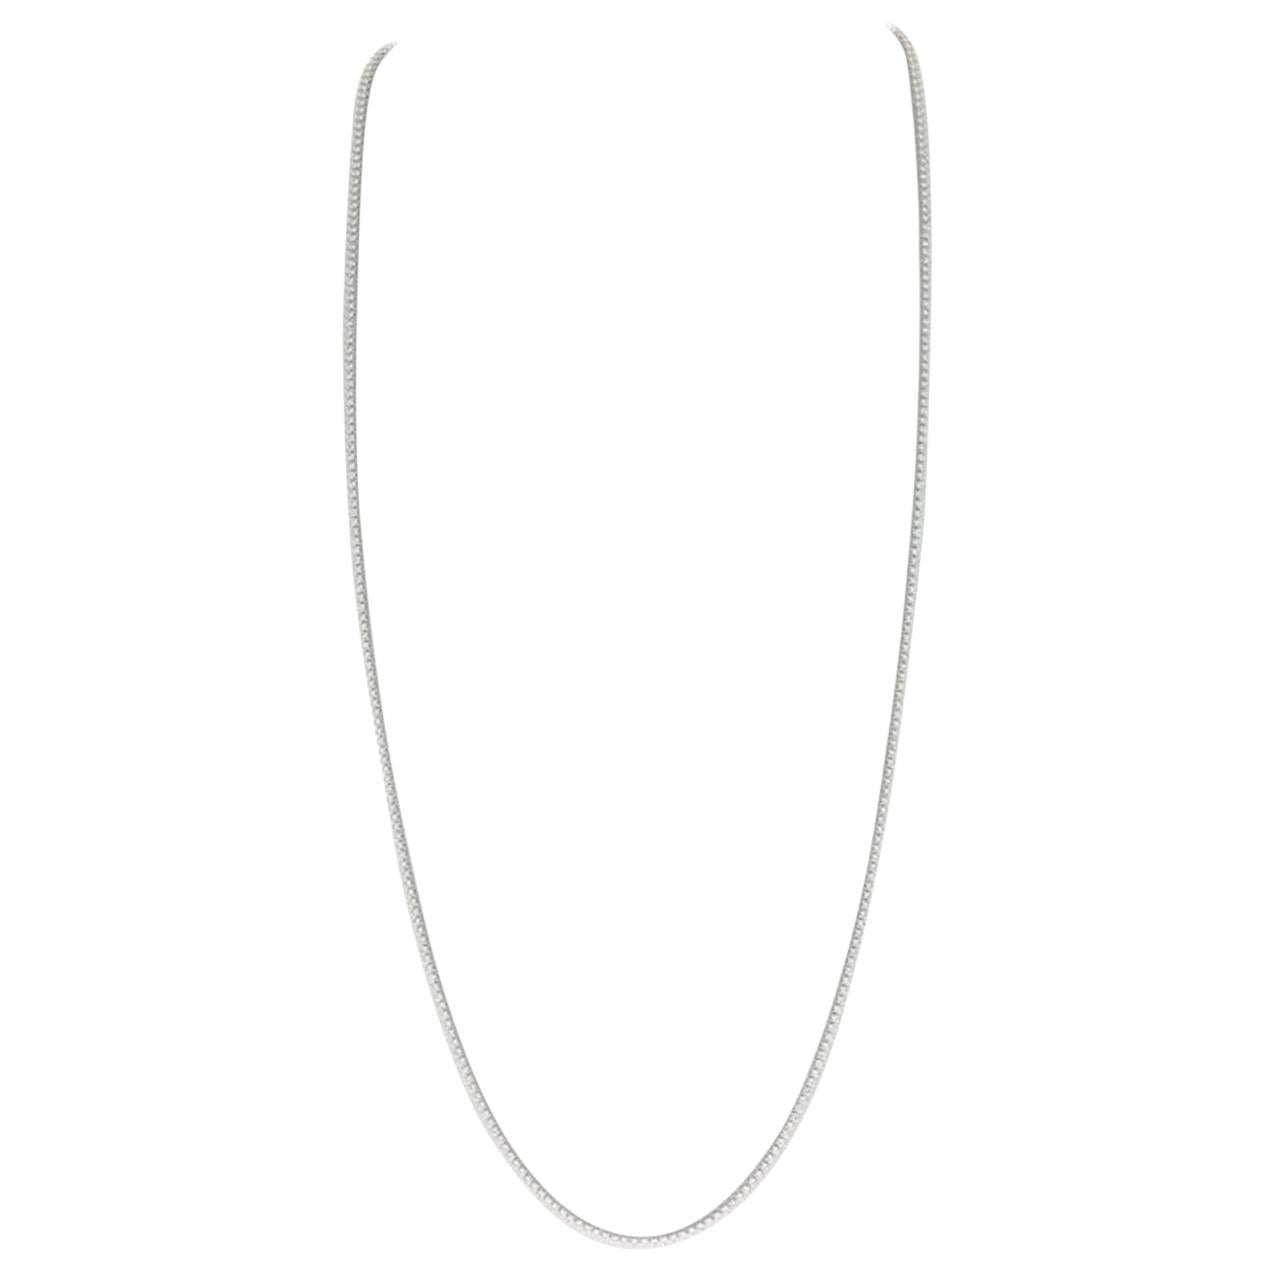 11.00 Carat GVS 349 Round Diamonds Chain Necklace/Long Necklace/Sautoir Necklace For Sale